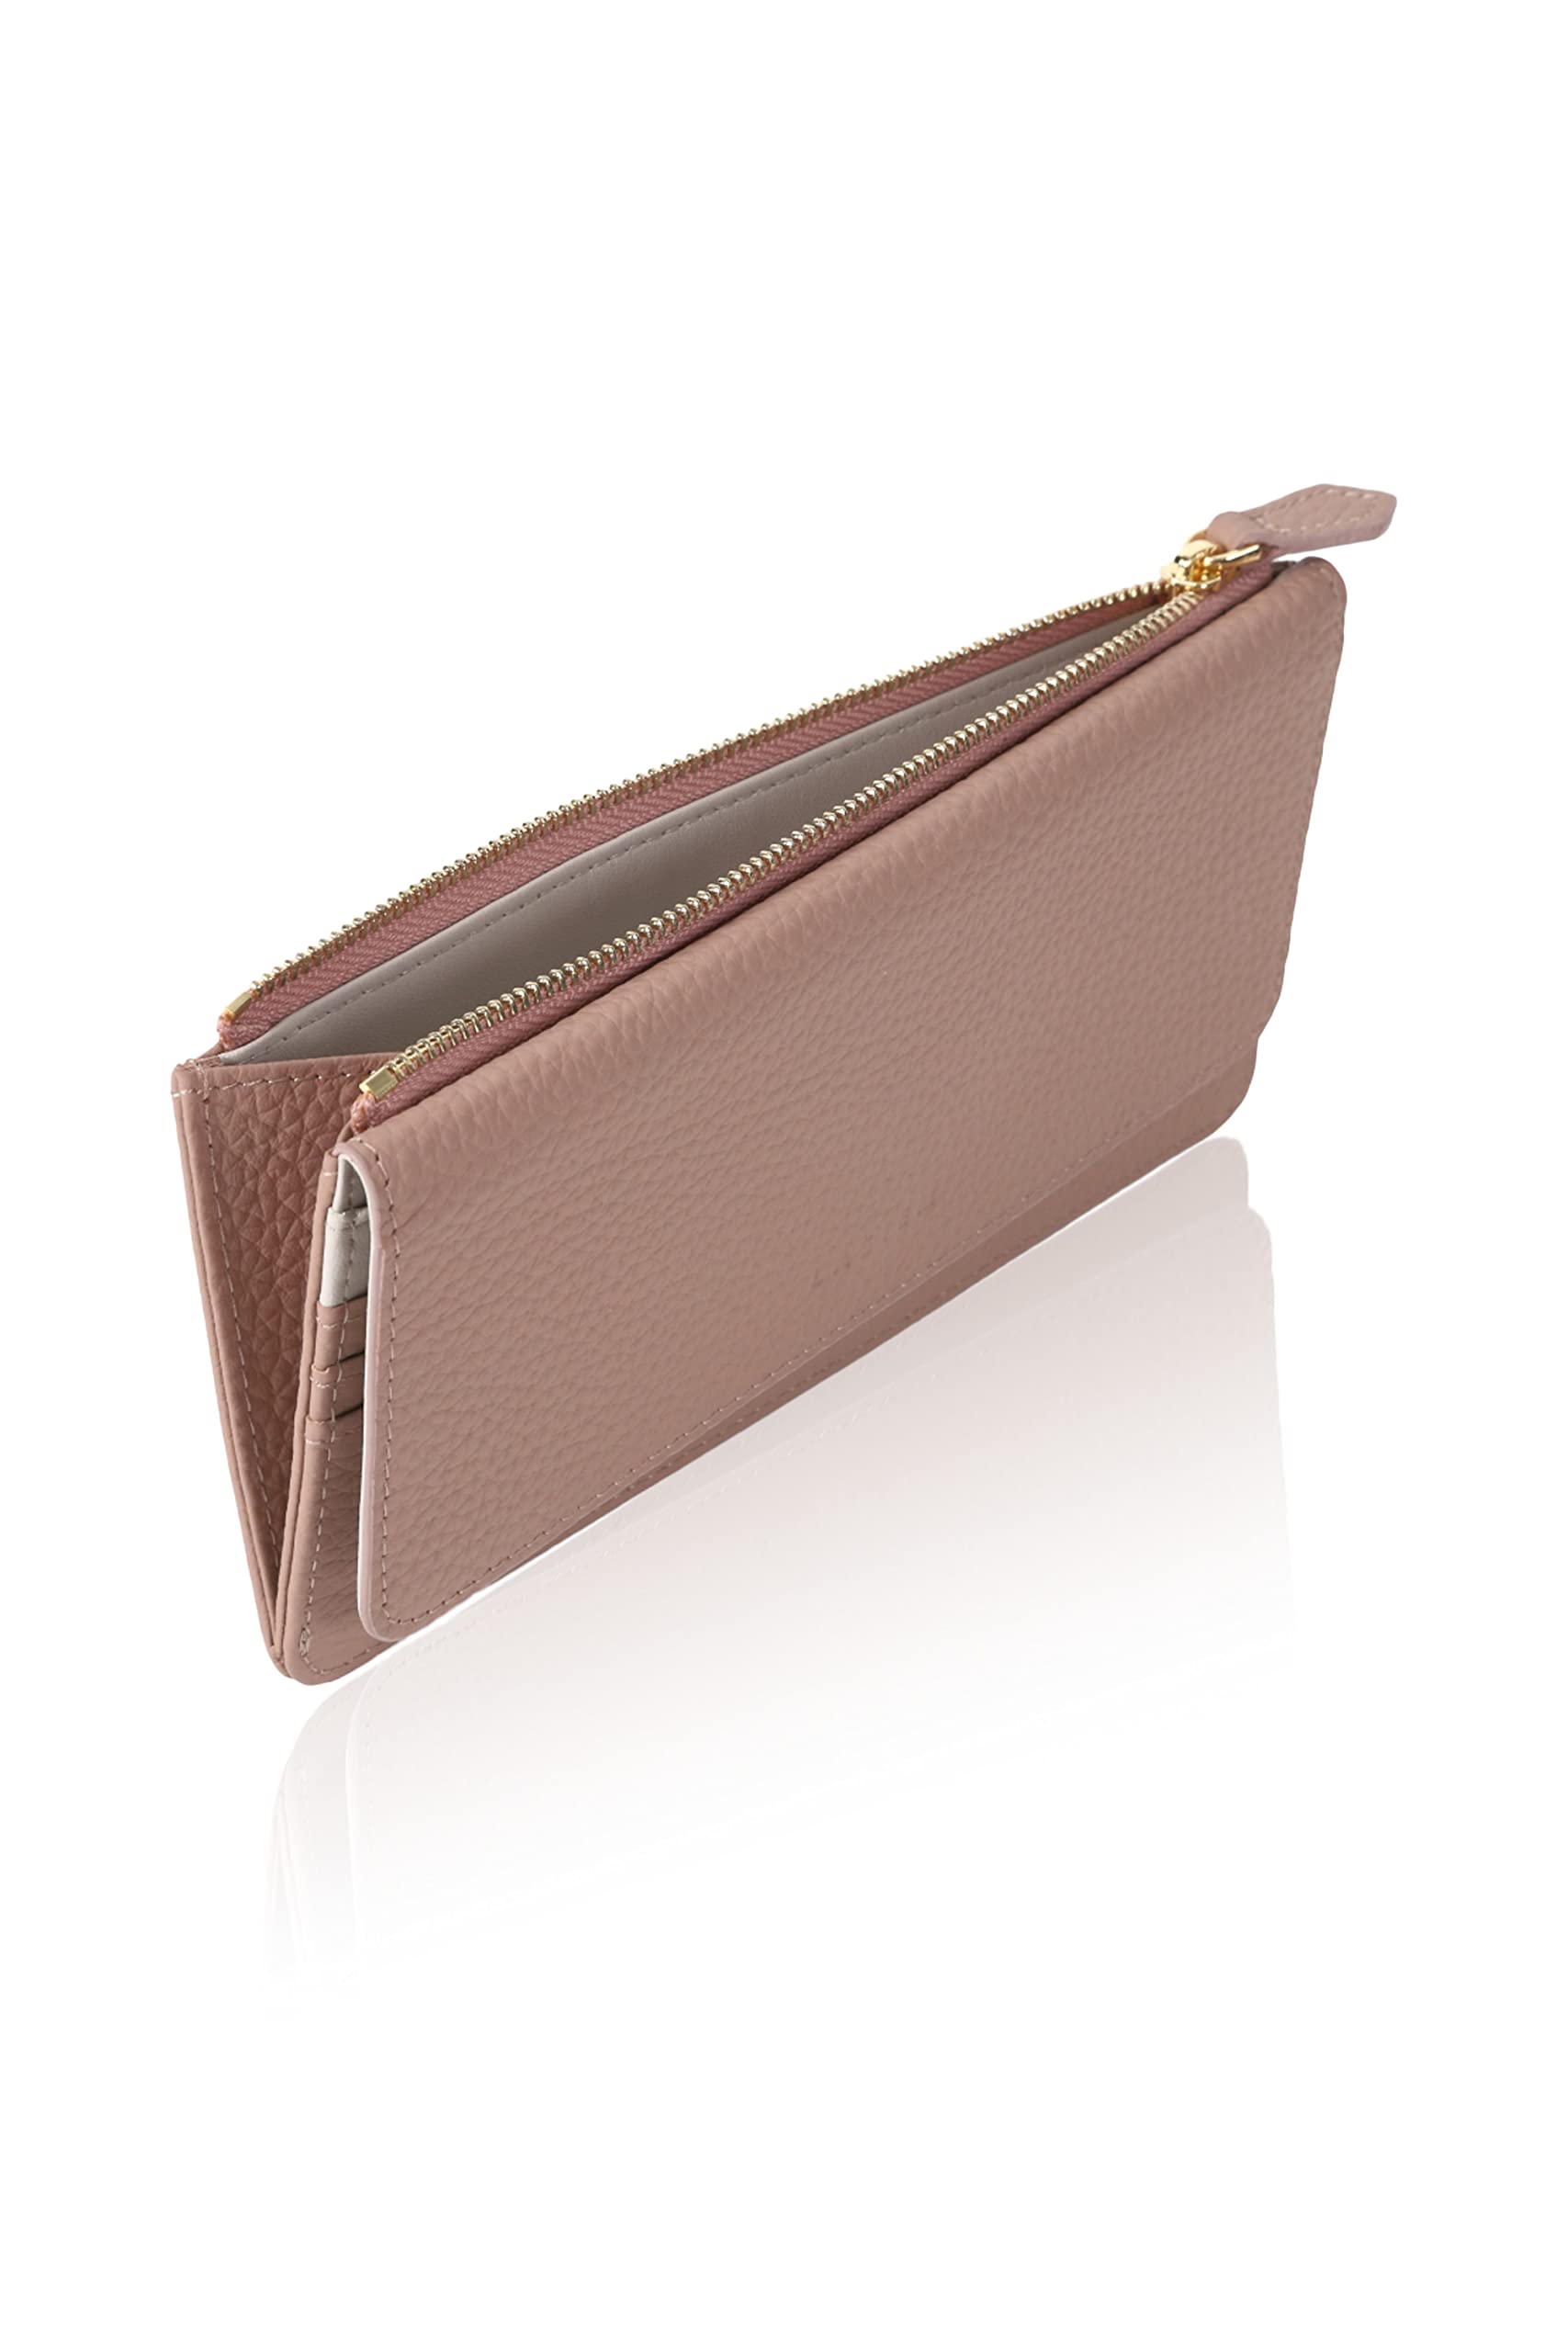 LASIEM(ラシエム) 長財布 かぶせ レディース 本革 薄型 軽い 財布 かぶせ蓋 大容量 スキミング防止 バイカラー (クラシックローズ×グレ